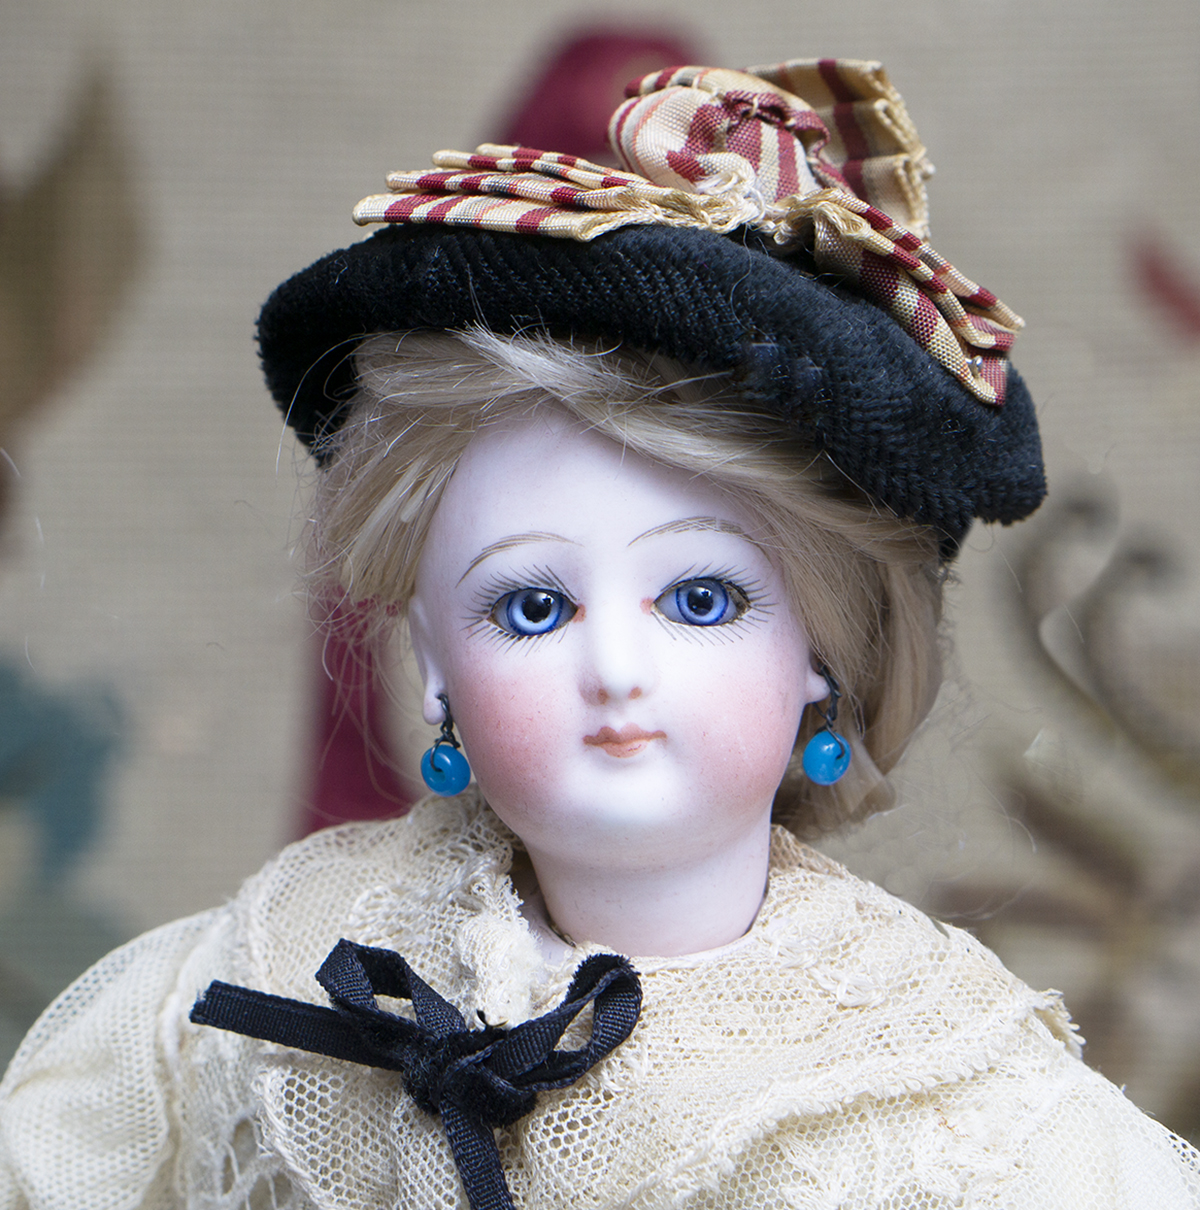 Petite Fashion doll